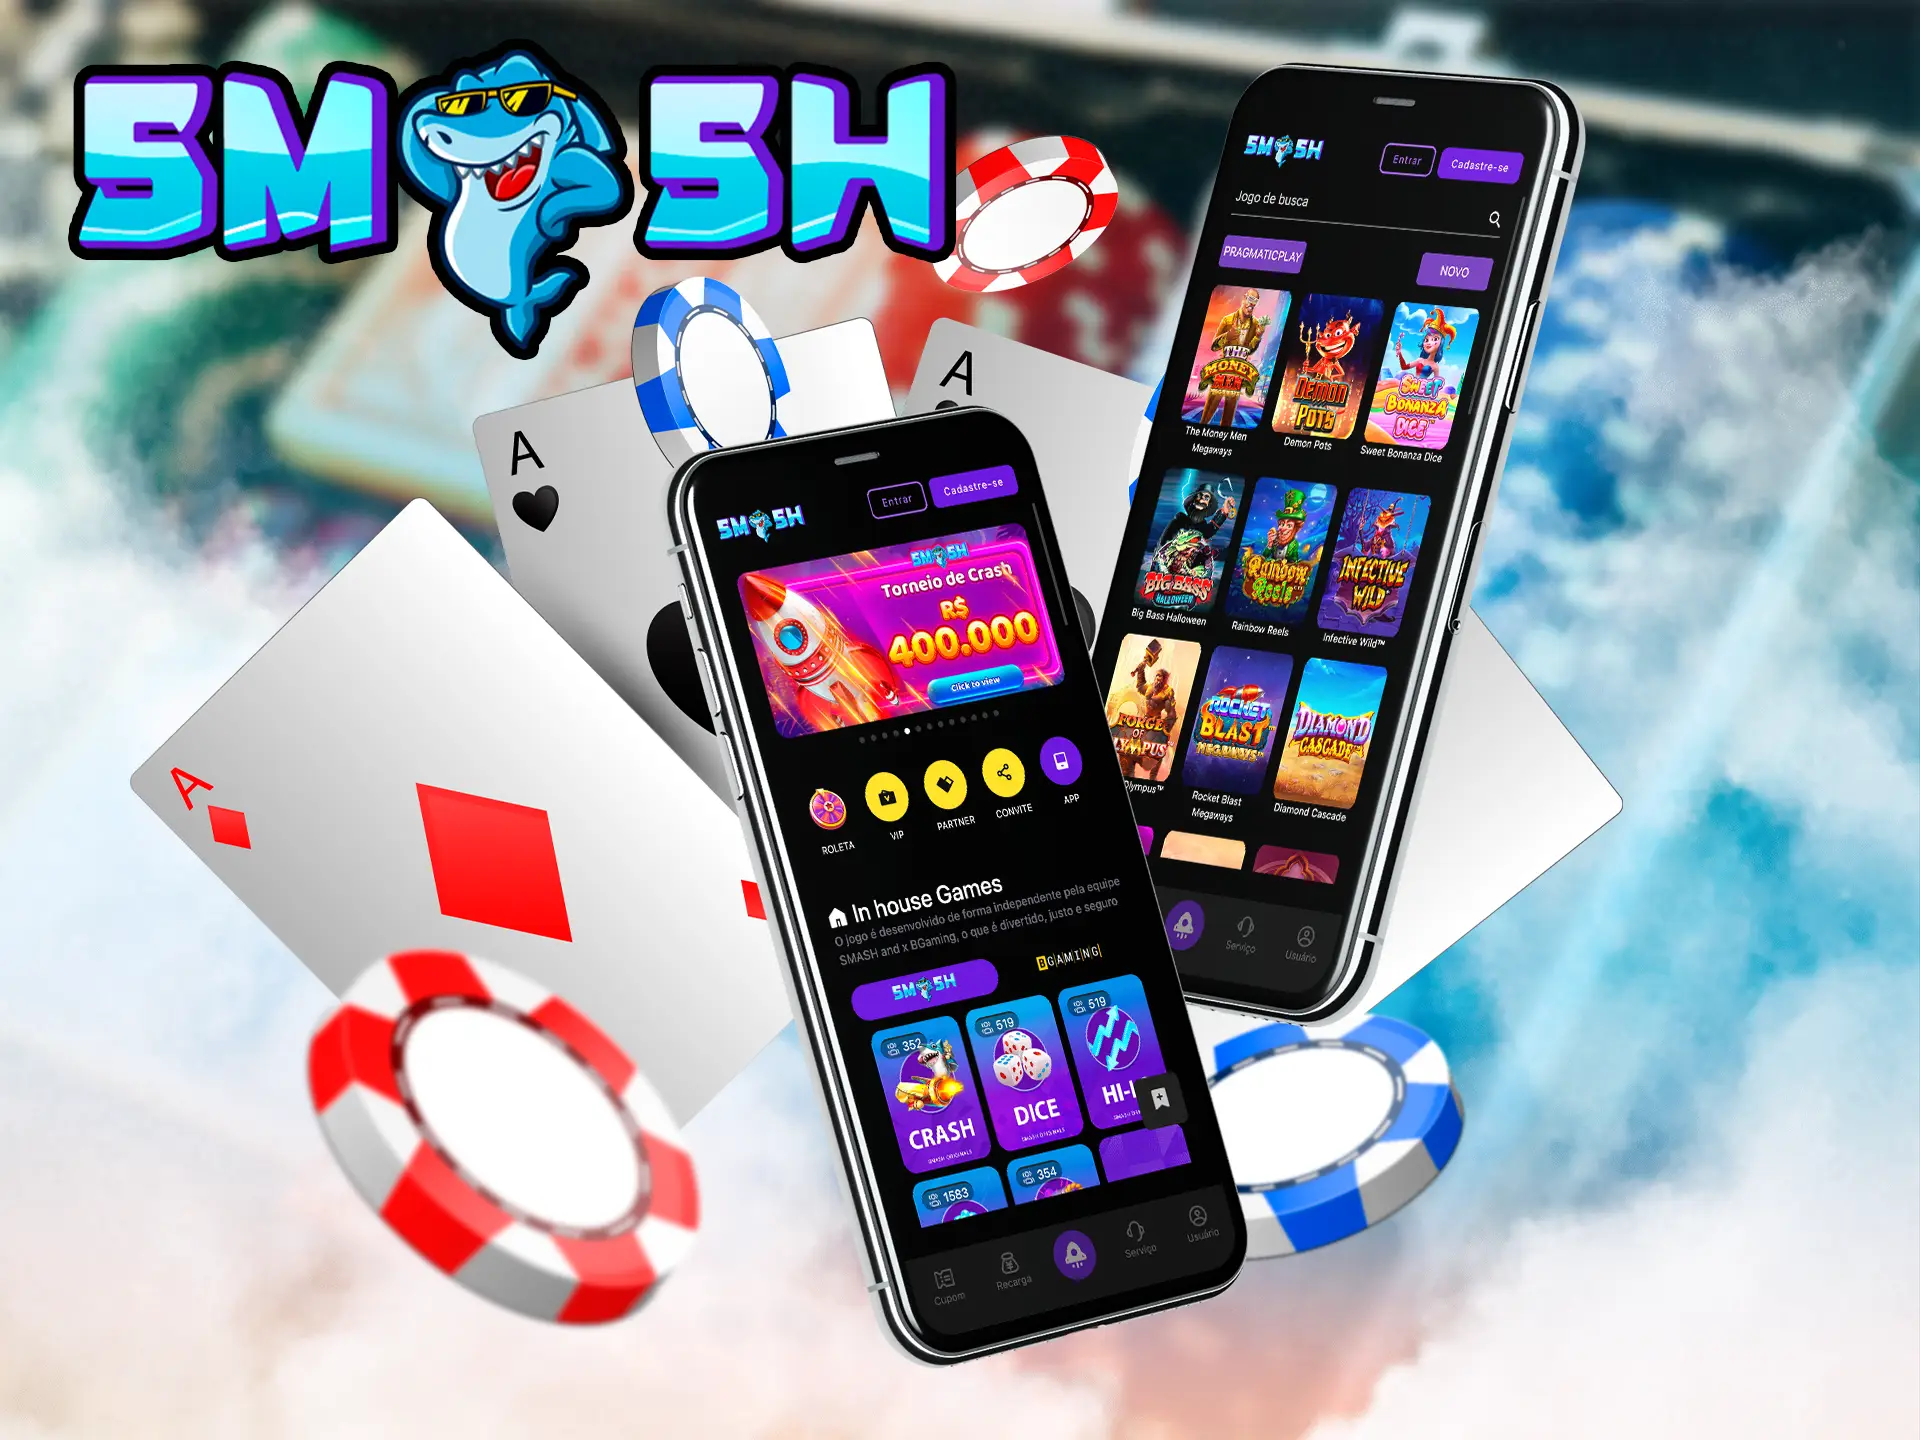 Mergulhe em uma grande variedade de tipos de jogos diretamente em seu smartphone, onde quiser, graças ao aplicativo Smashup.